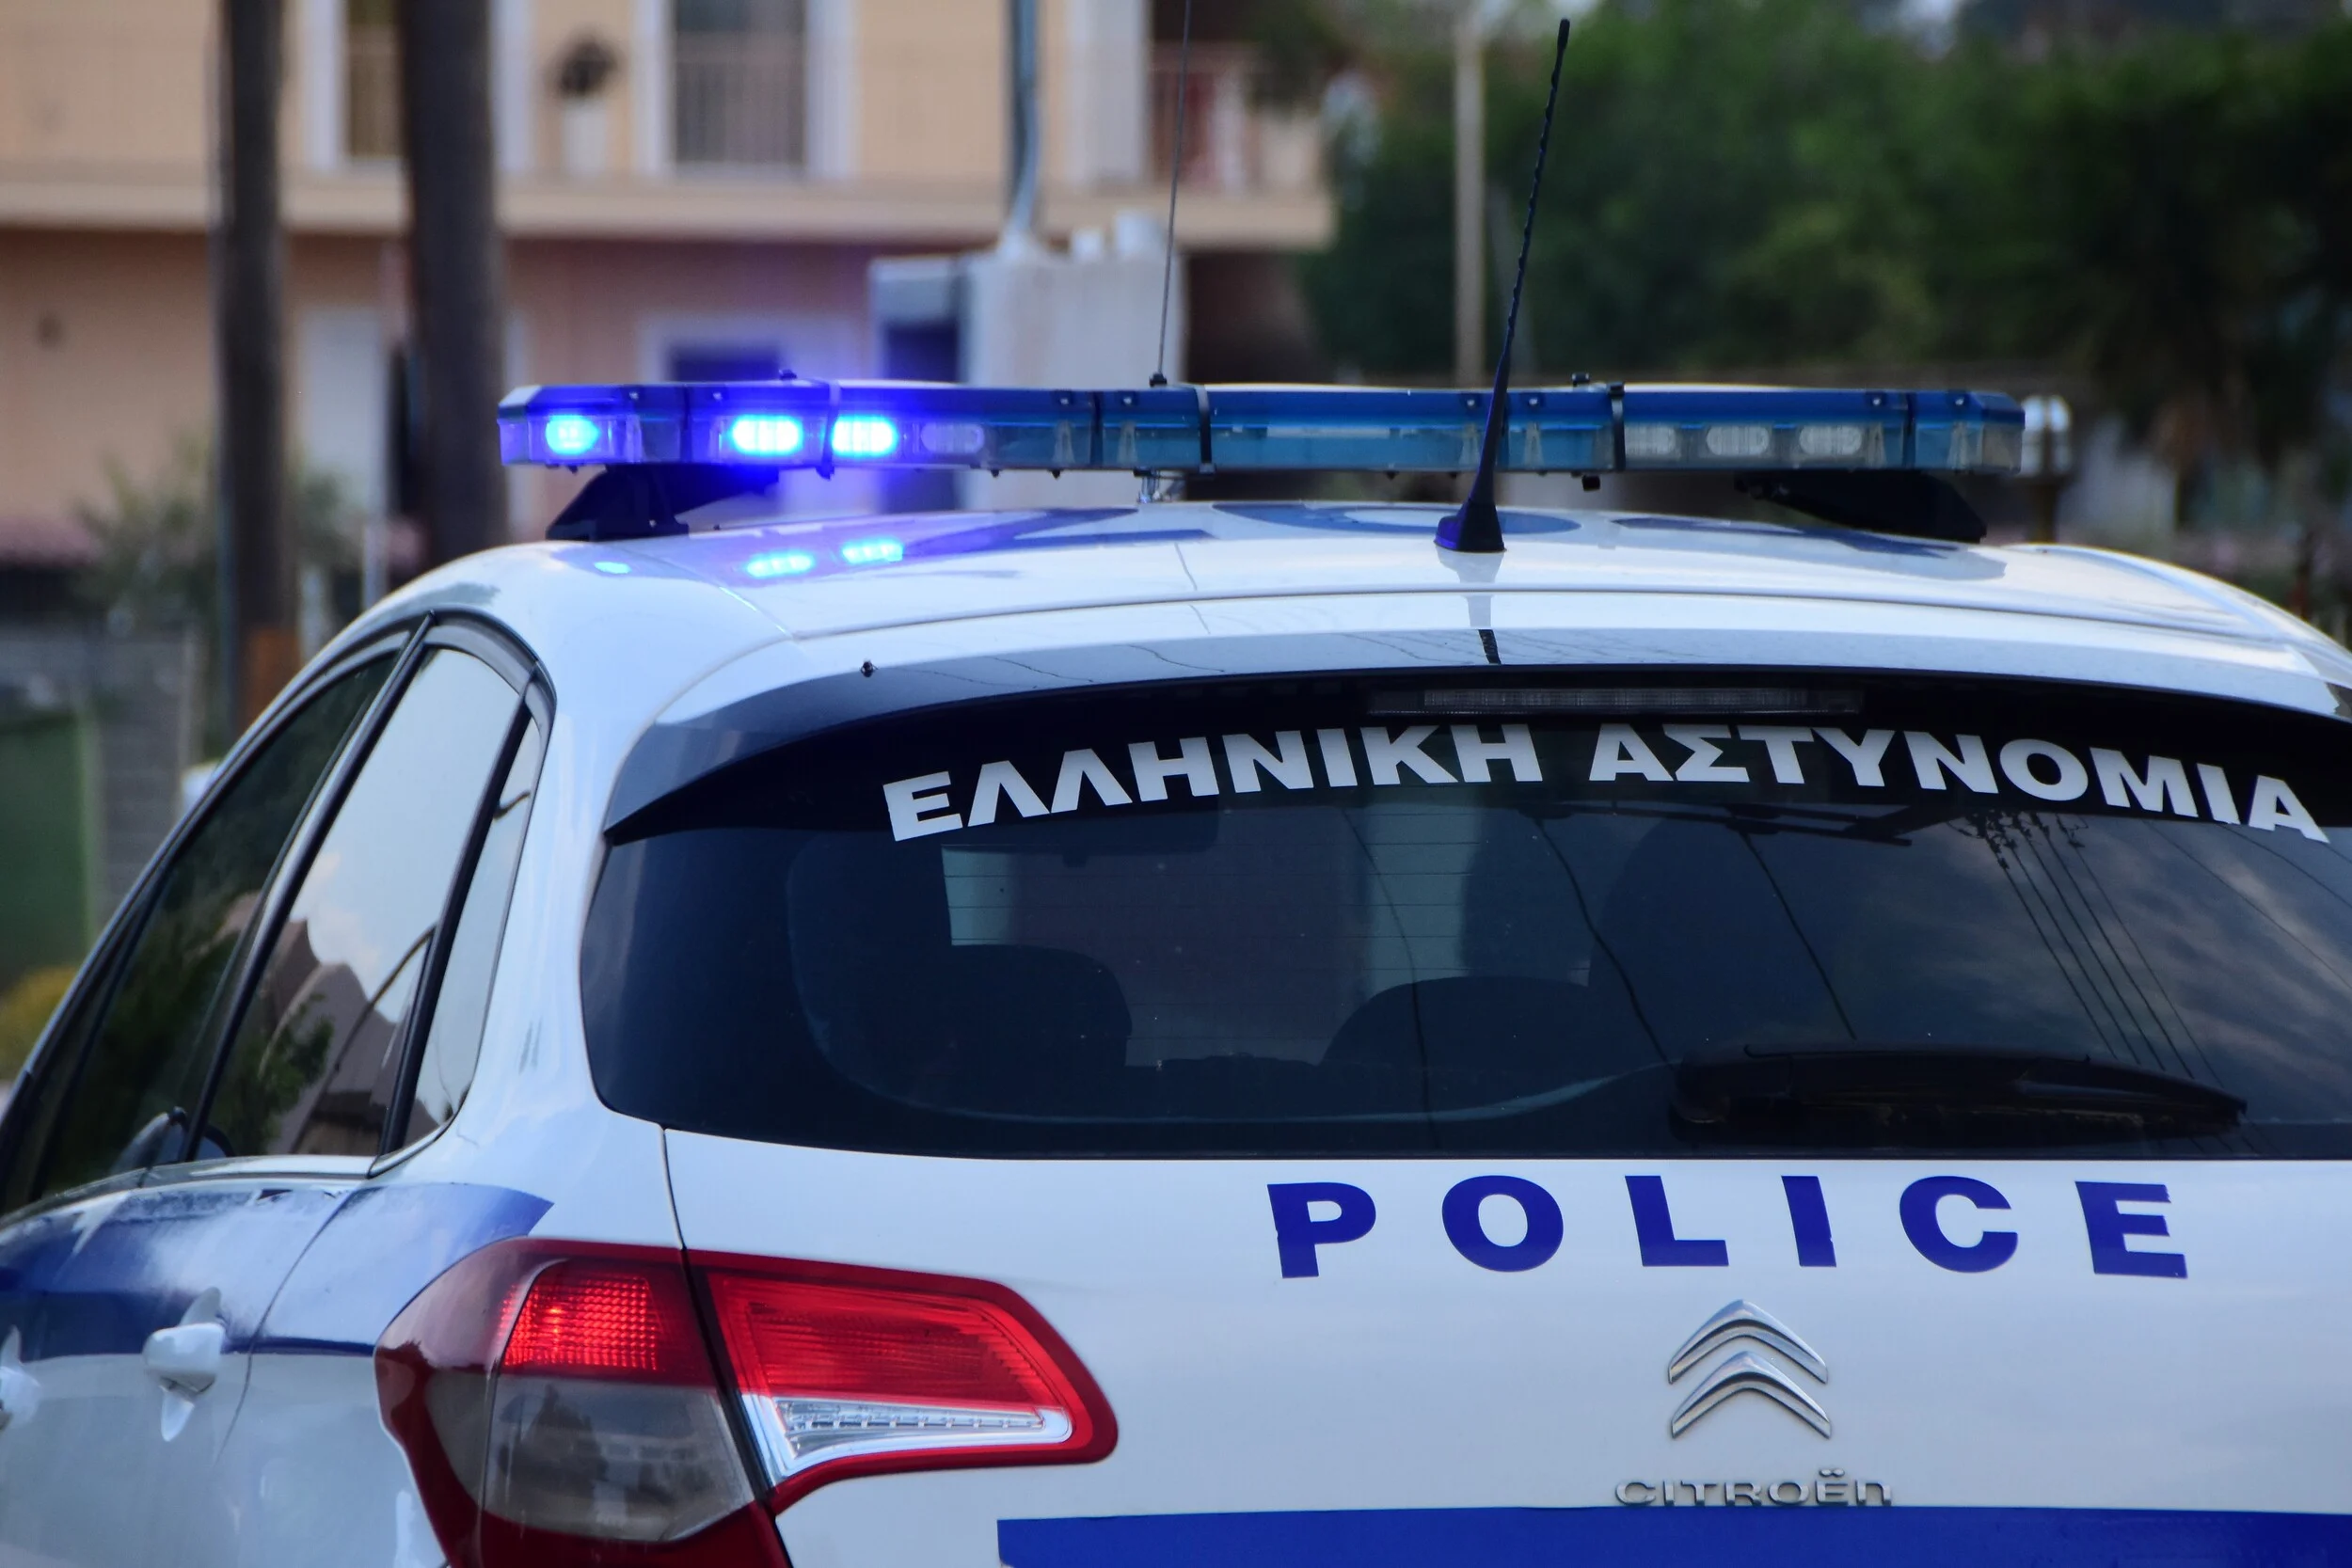 Greek Mafia: Εμπλέκονται σε ανθρωποκτονίες, εκρήξεις και εμπρησμούς